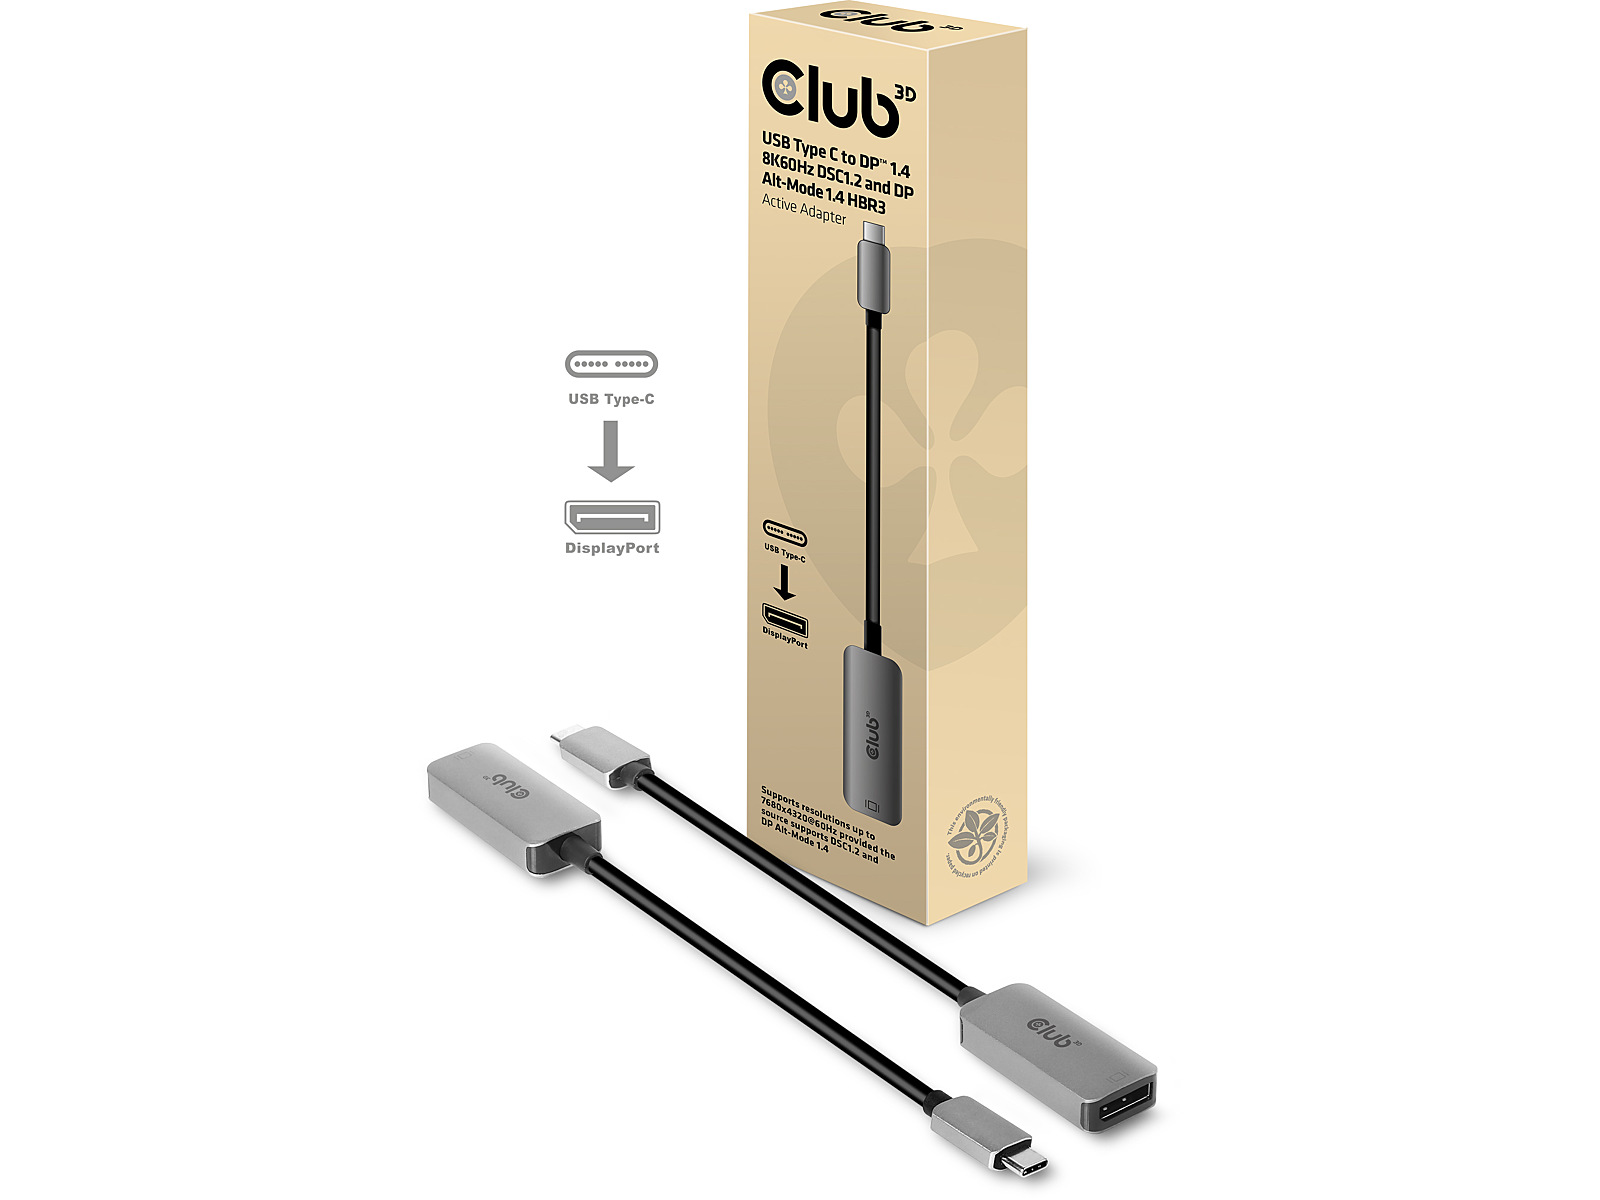 Club 3D  USB C over ALT Mode